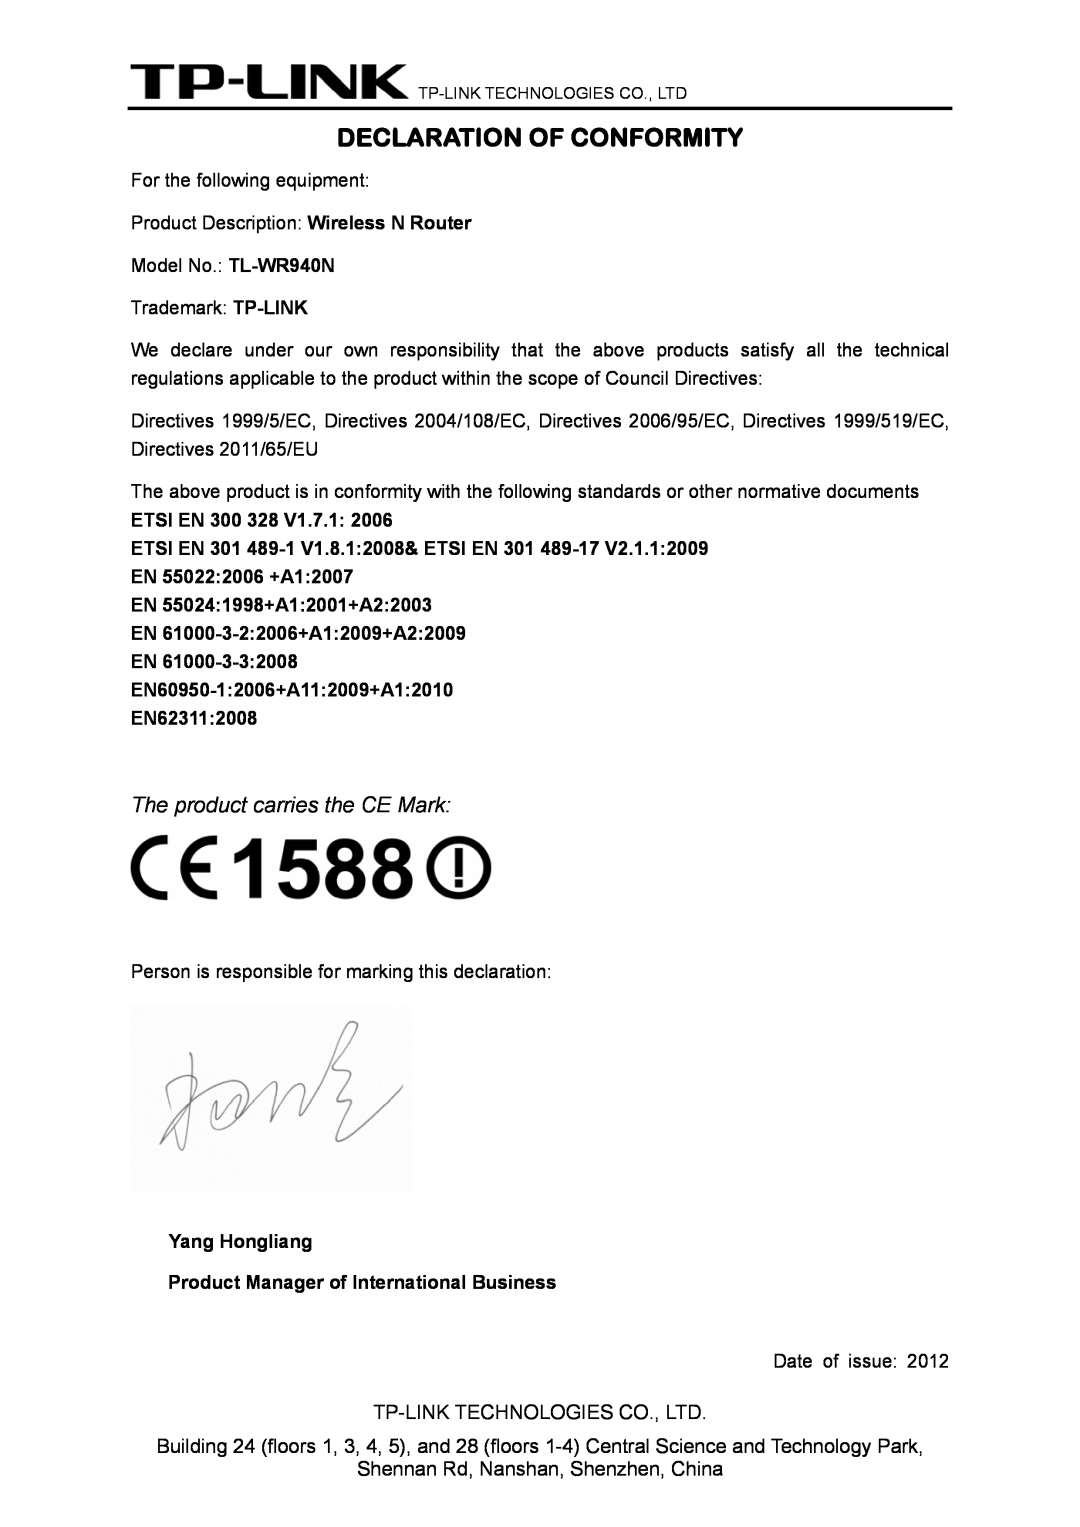 TP-Link TL-WR940N manual Declaration Of Conformity, ETSI EN 300 328 V1.7.1, EN60950-12006+A112009+A12010 EN623112008 